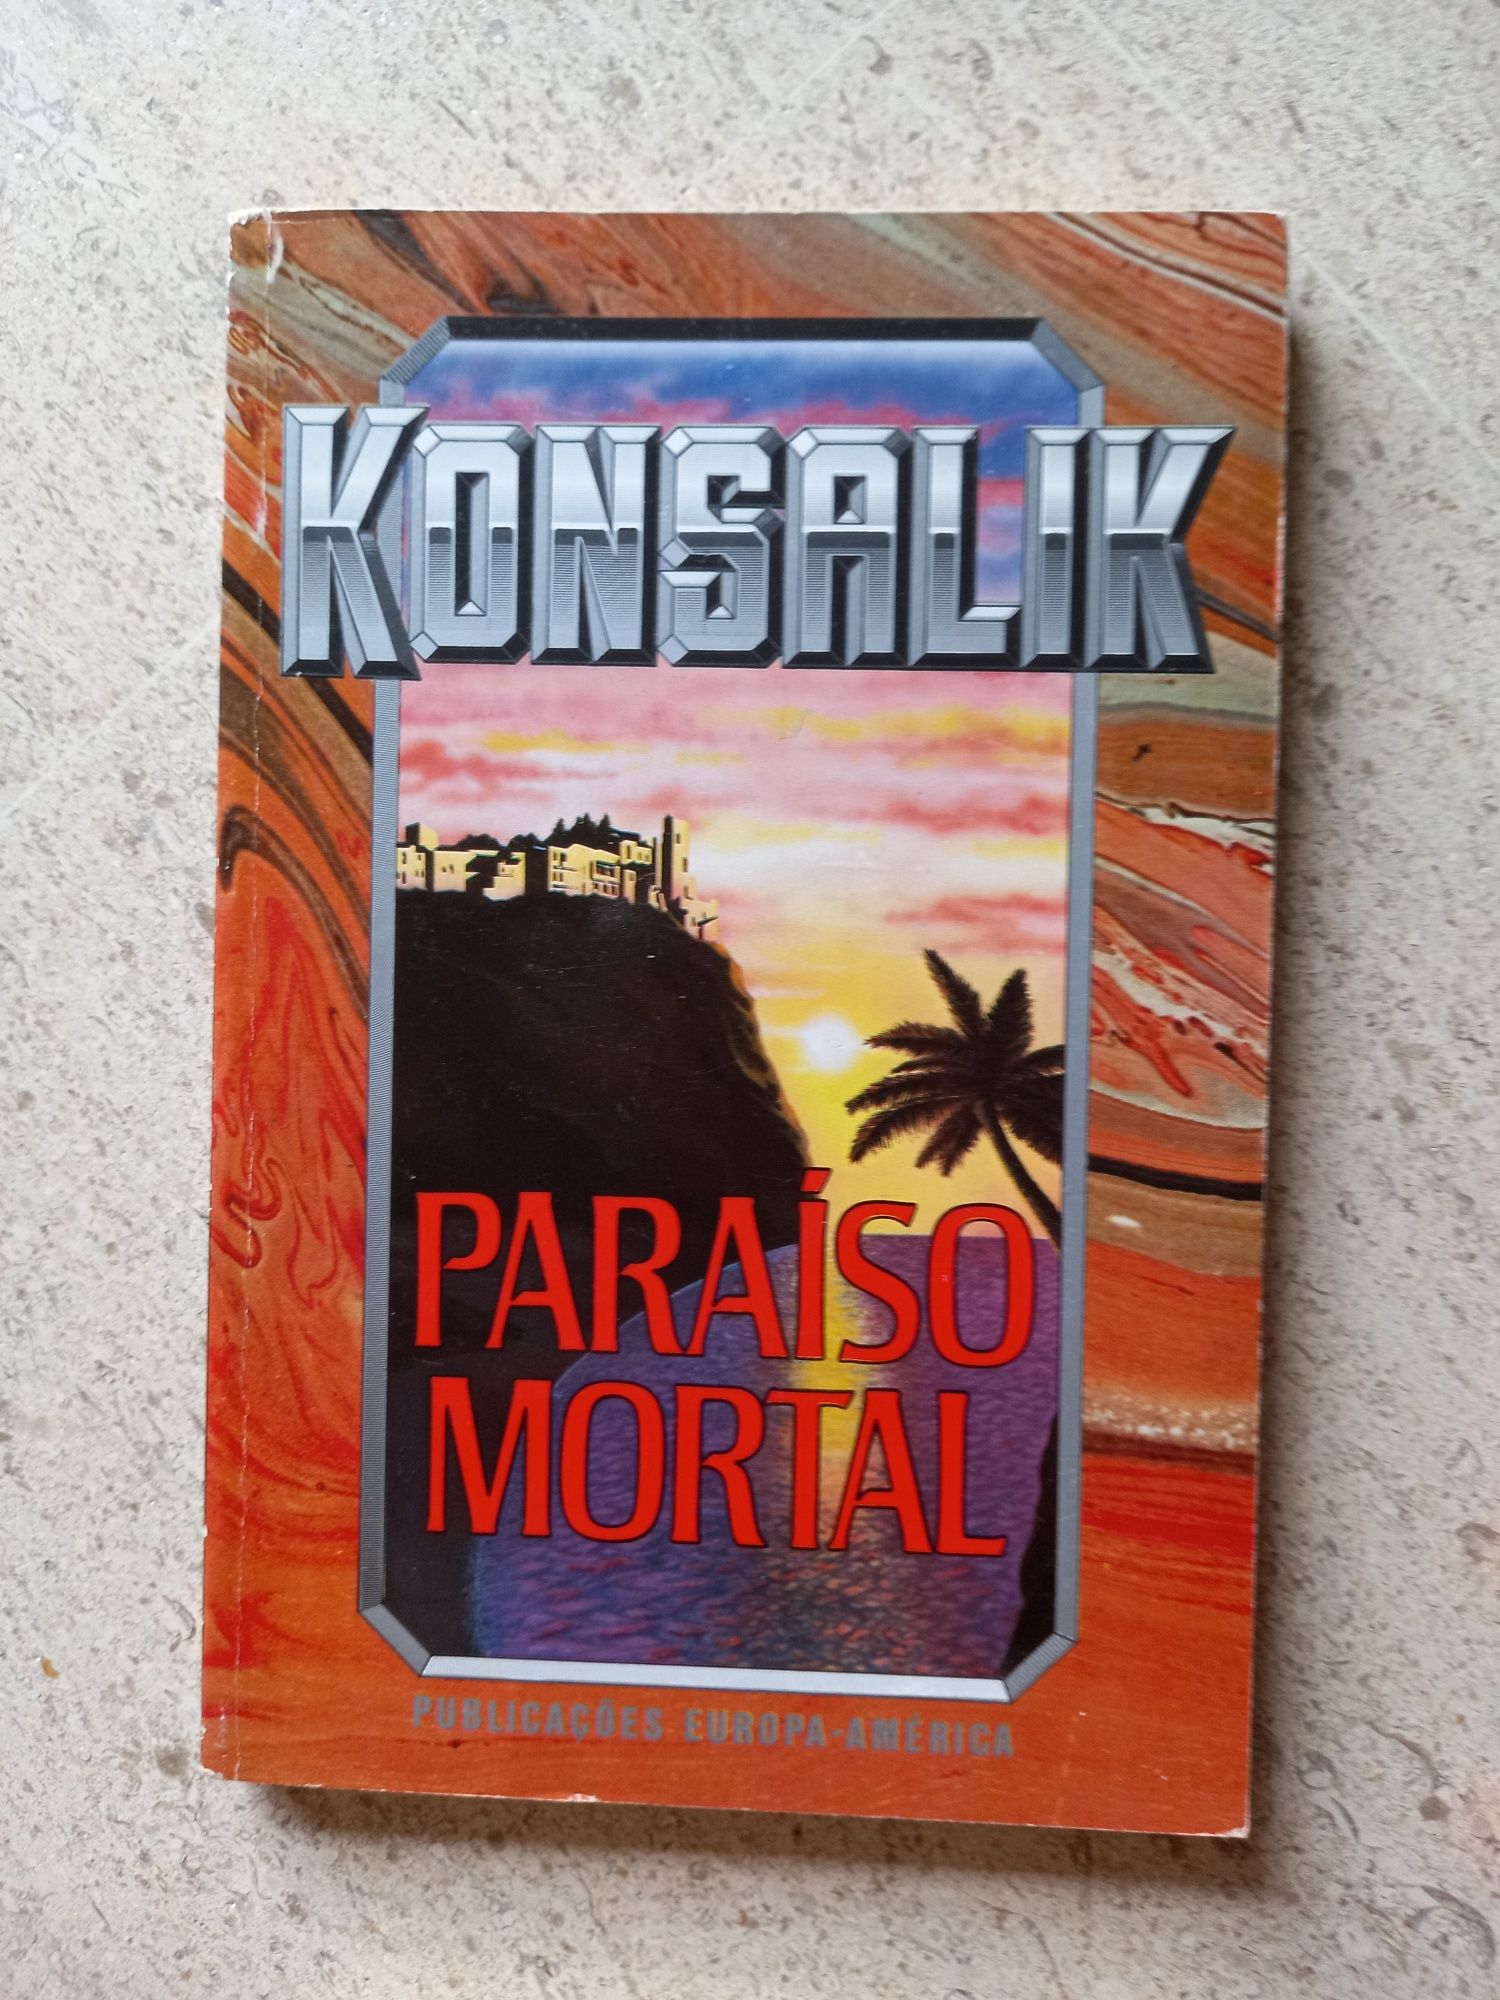 Konsalik - 7 livros